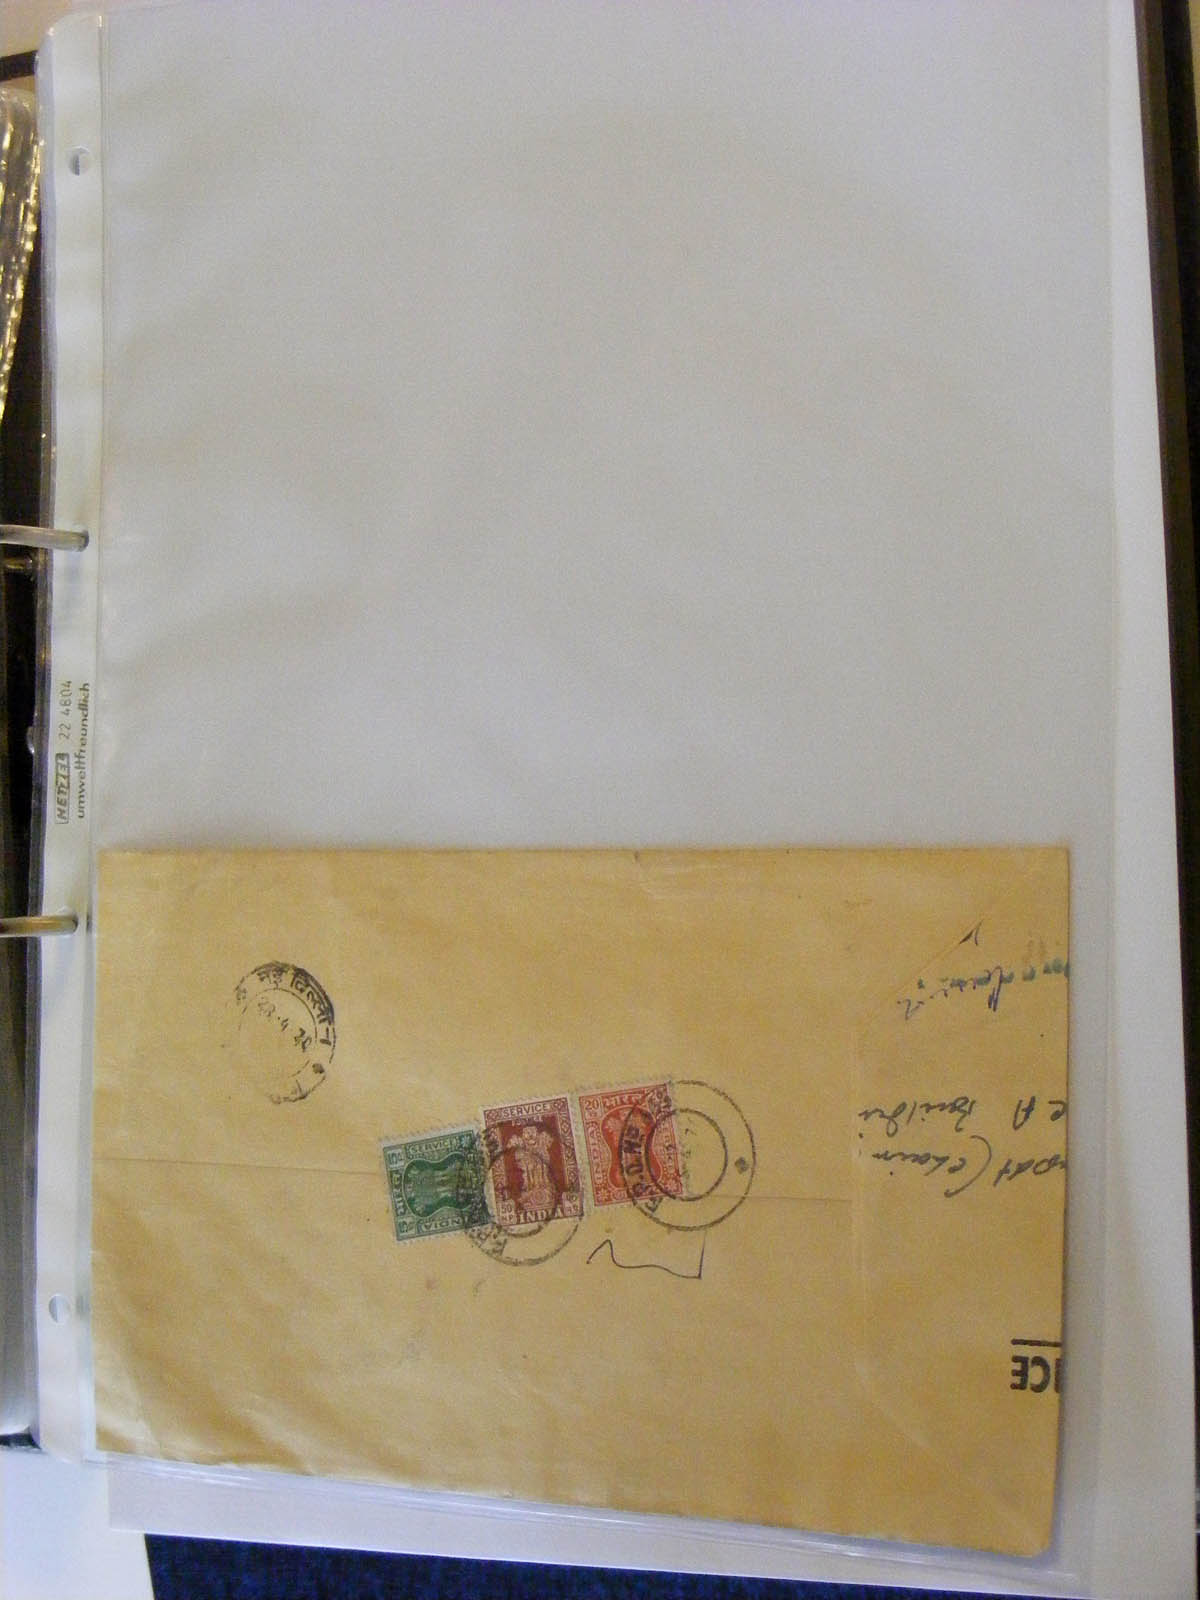 19584-1 129 - 19584 India dienst brieven.